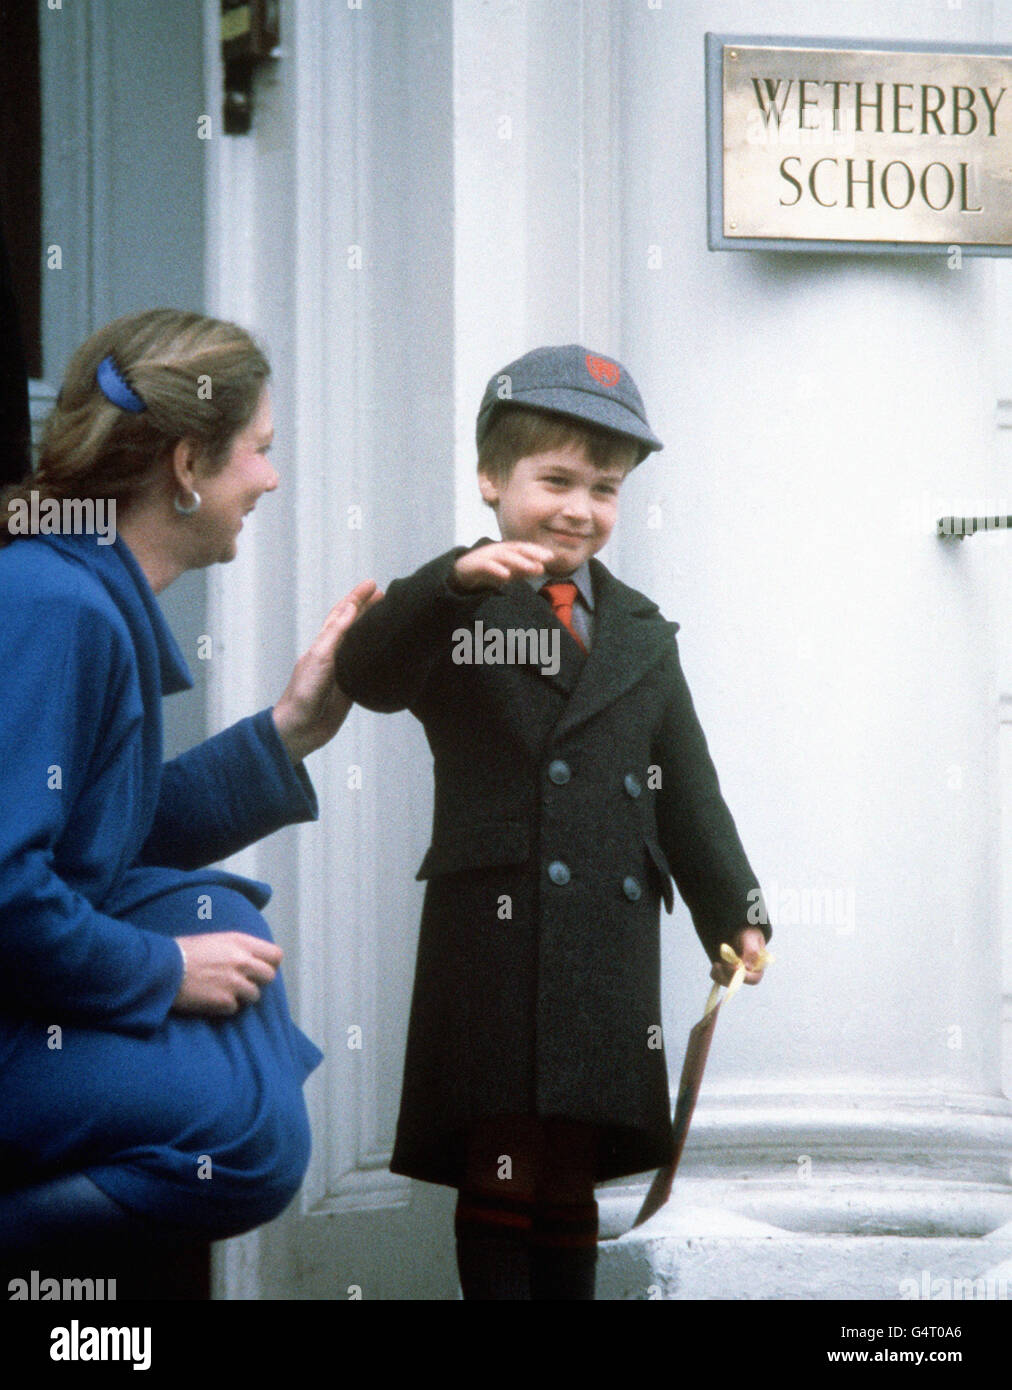 Il principe William ondeggia agli occhi dopo il suo primo giorno alla sua nuova scuola, la 'Wetherby School' a Notting Hill Gate, Londra. Foto Stock